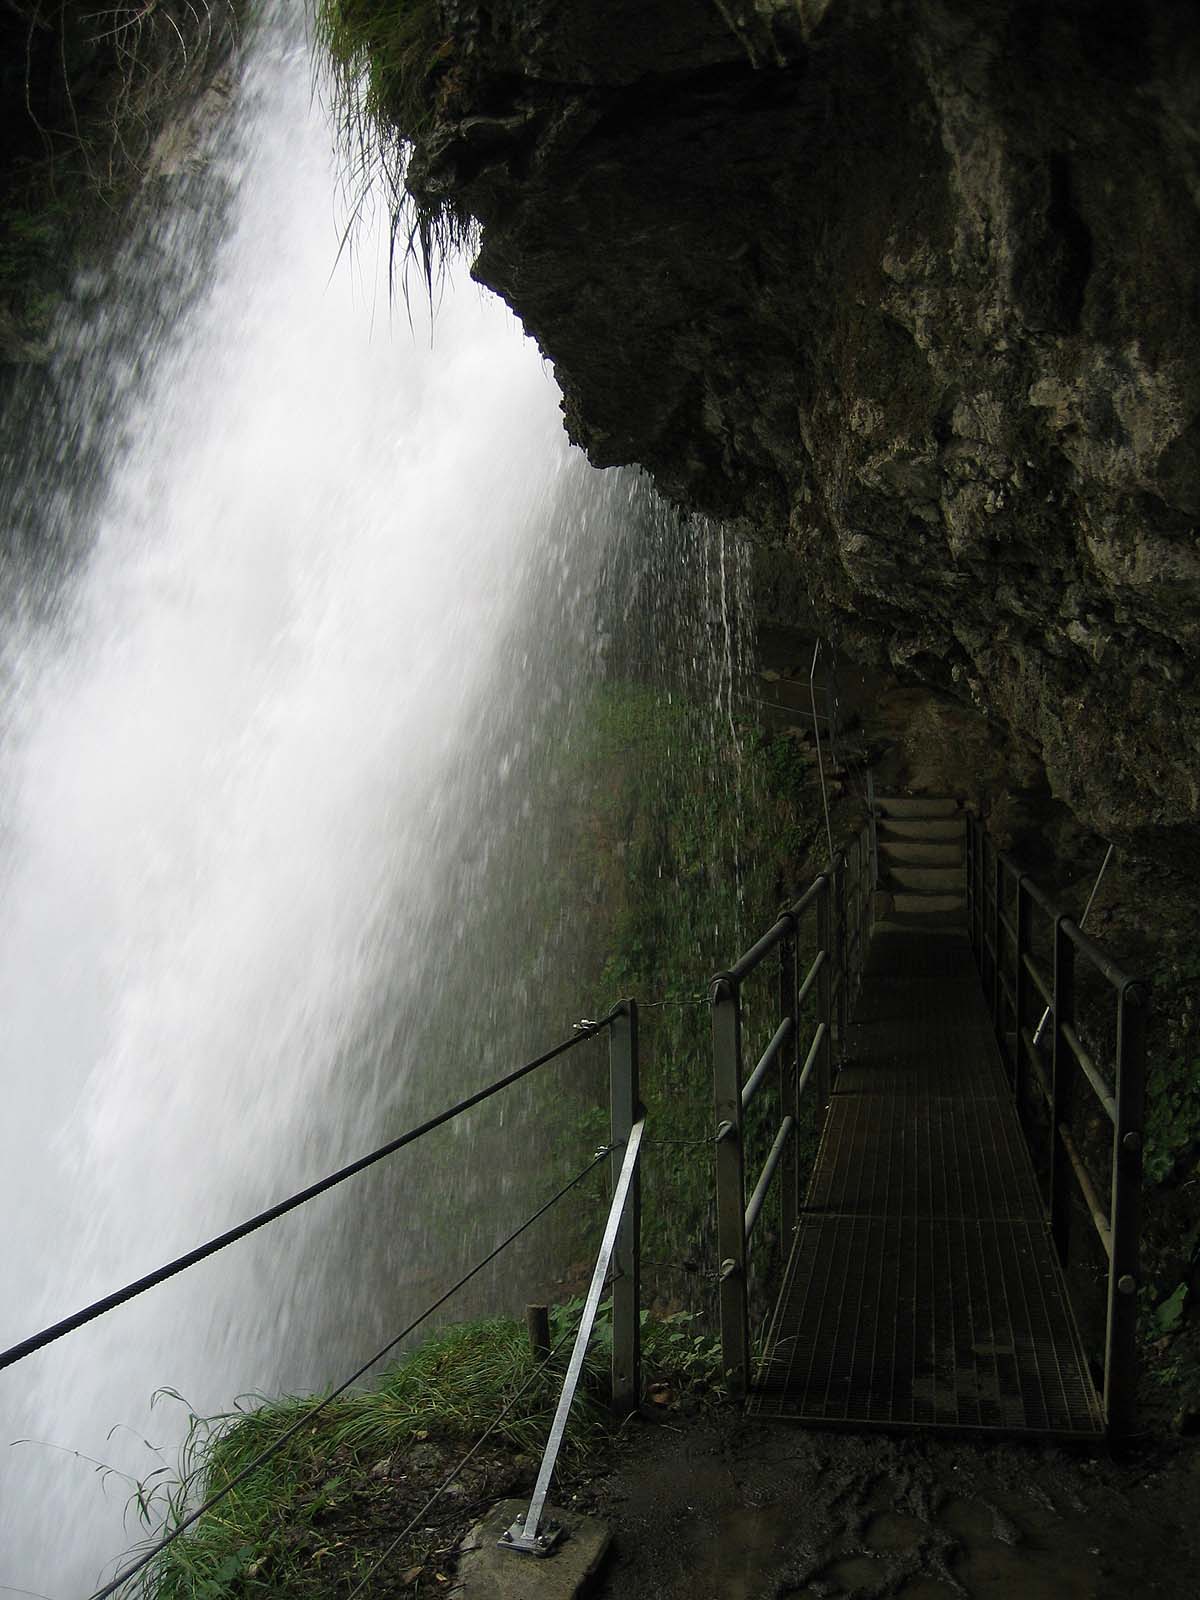 Giessbach Falls